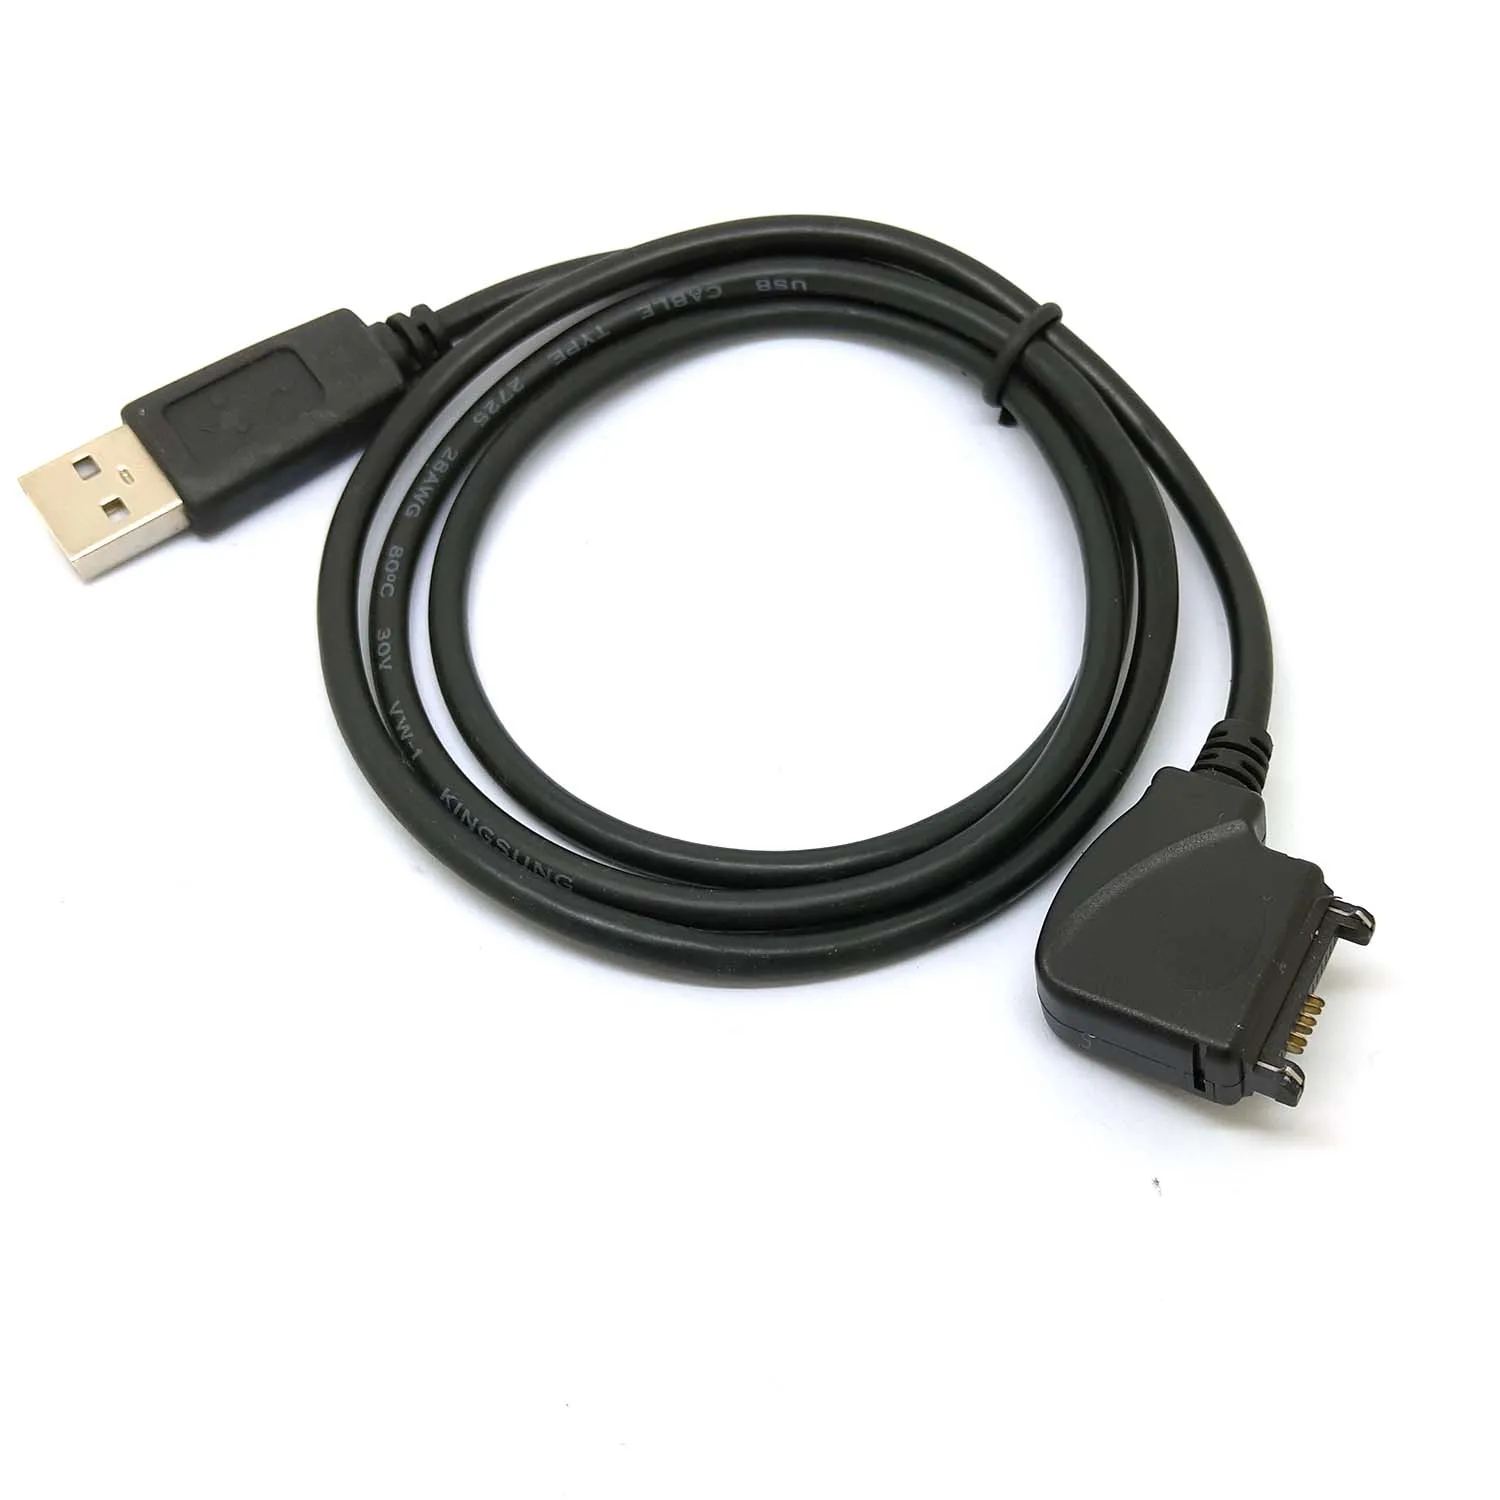 USB кабель для передачи данных NOKIA N70 N72 N73 3100 6100 3120 3108 6108|Кабели данных| |